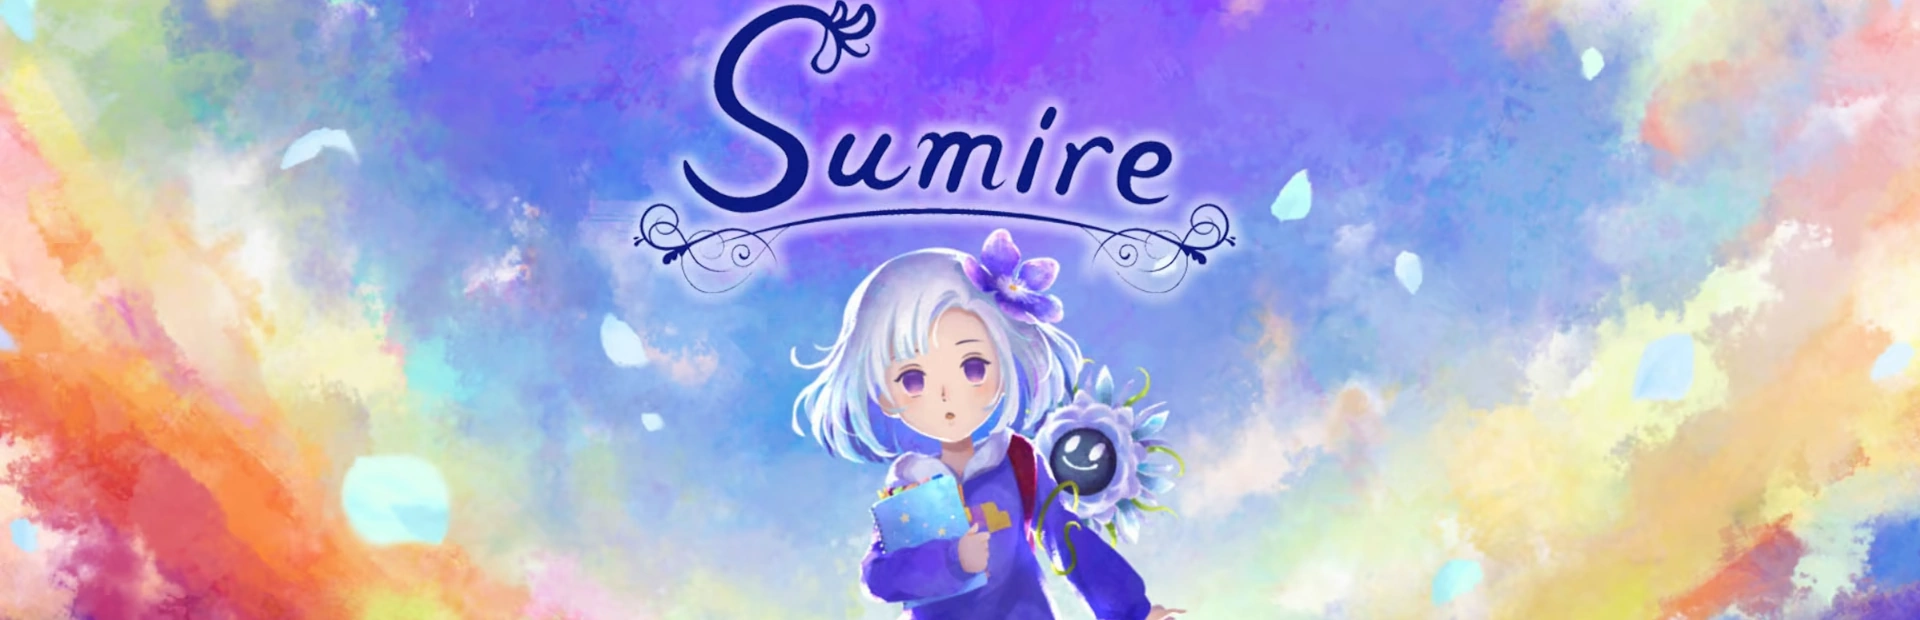 دانلود بازی رایگان Sumire برای کامپیوتر | گیمباتو